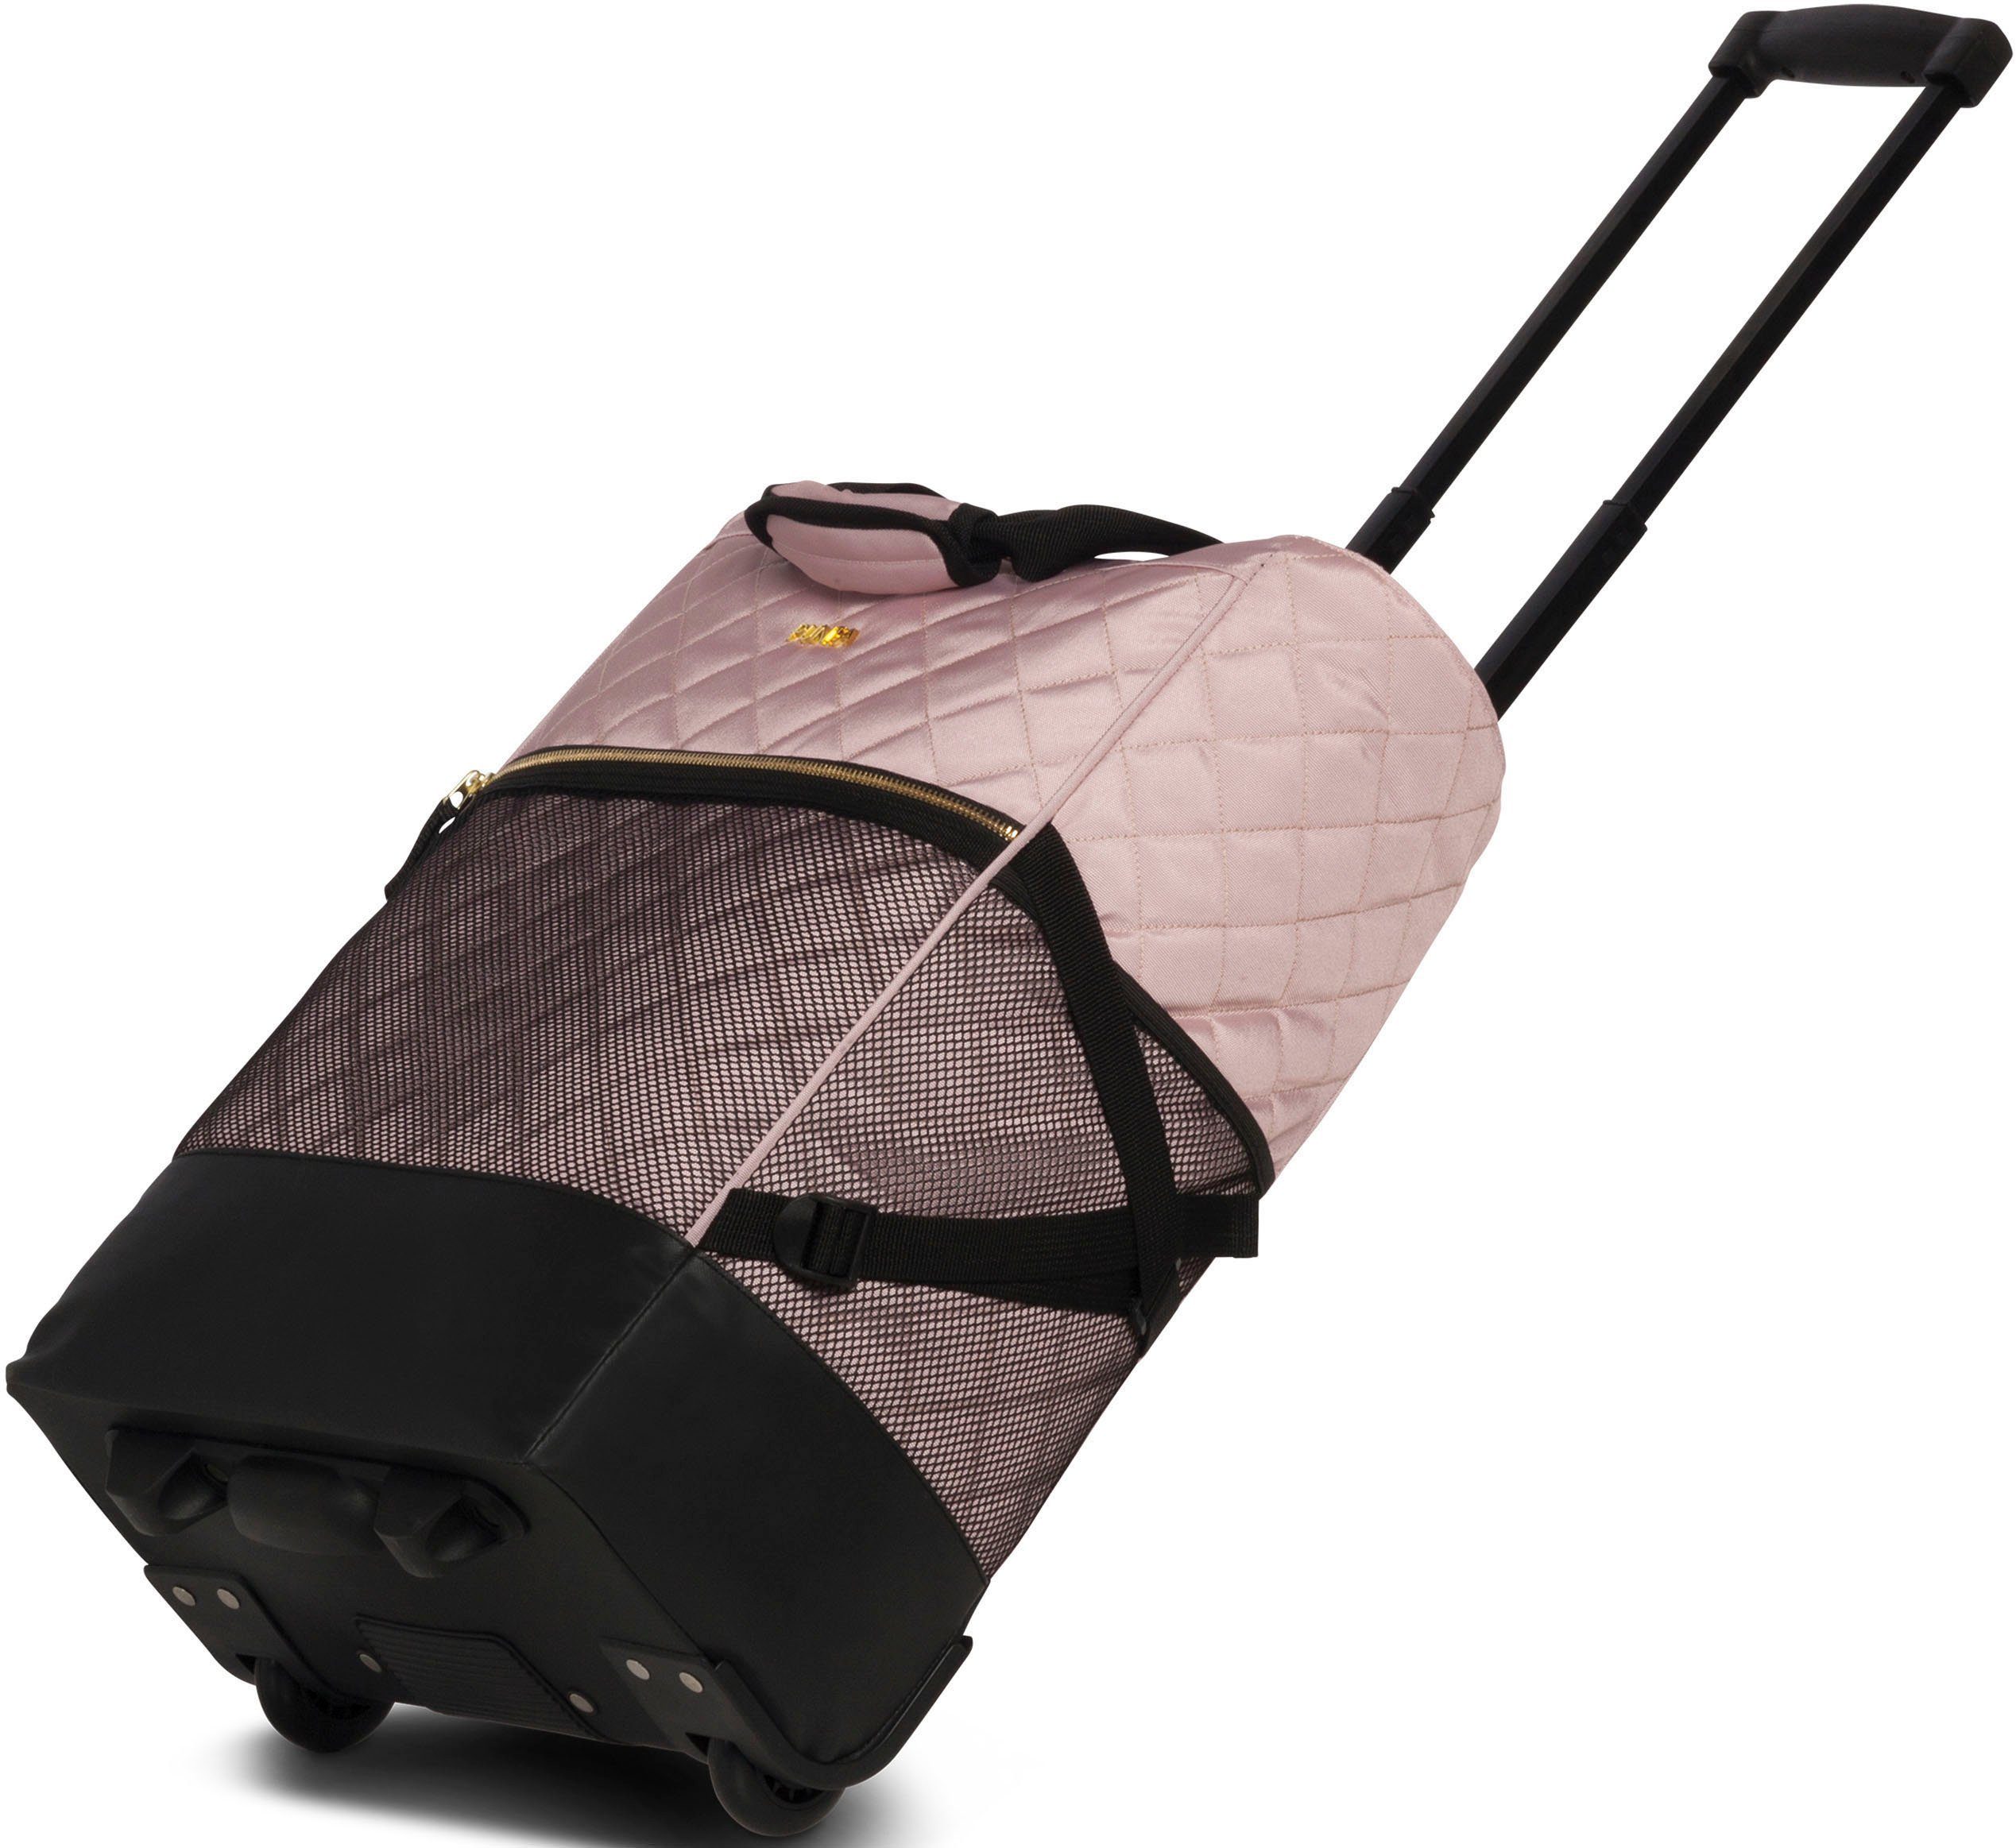 mit fabrizio® Punta-Wheel-Shopping-Roller, und edler abgestepter Einkaufstrolley 33 l, Golddetails rosa Look Oberfläche